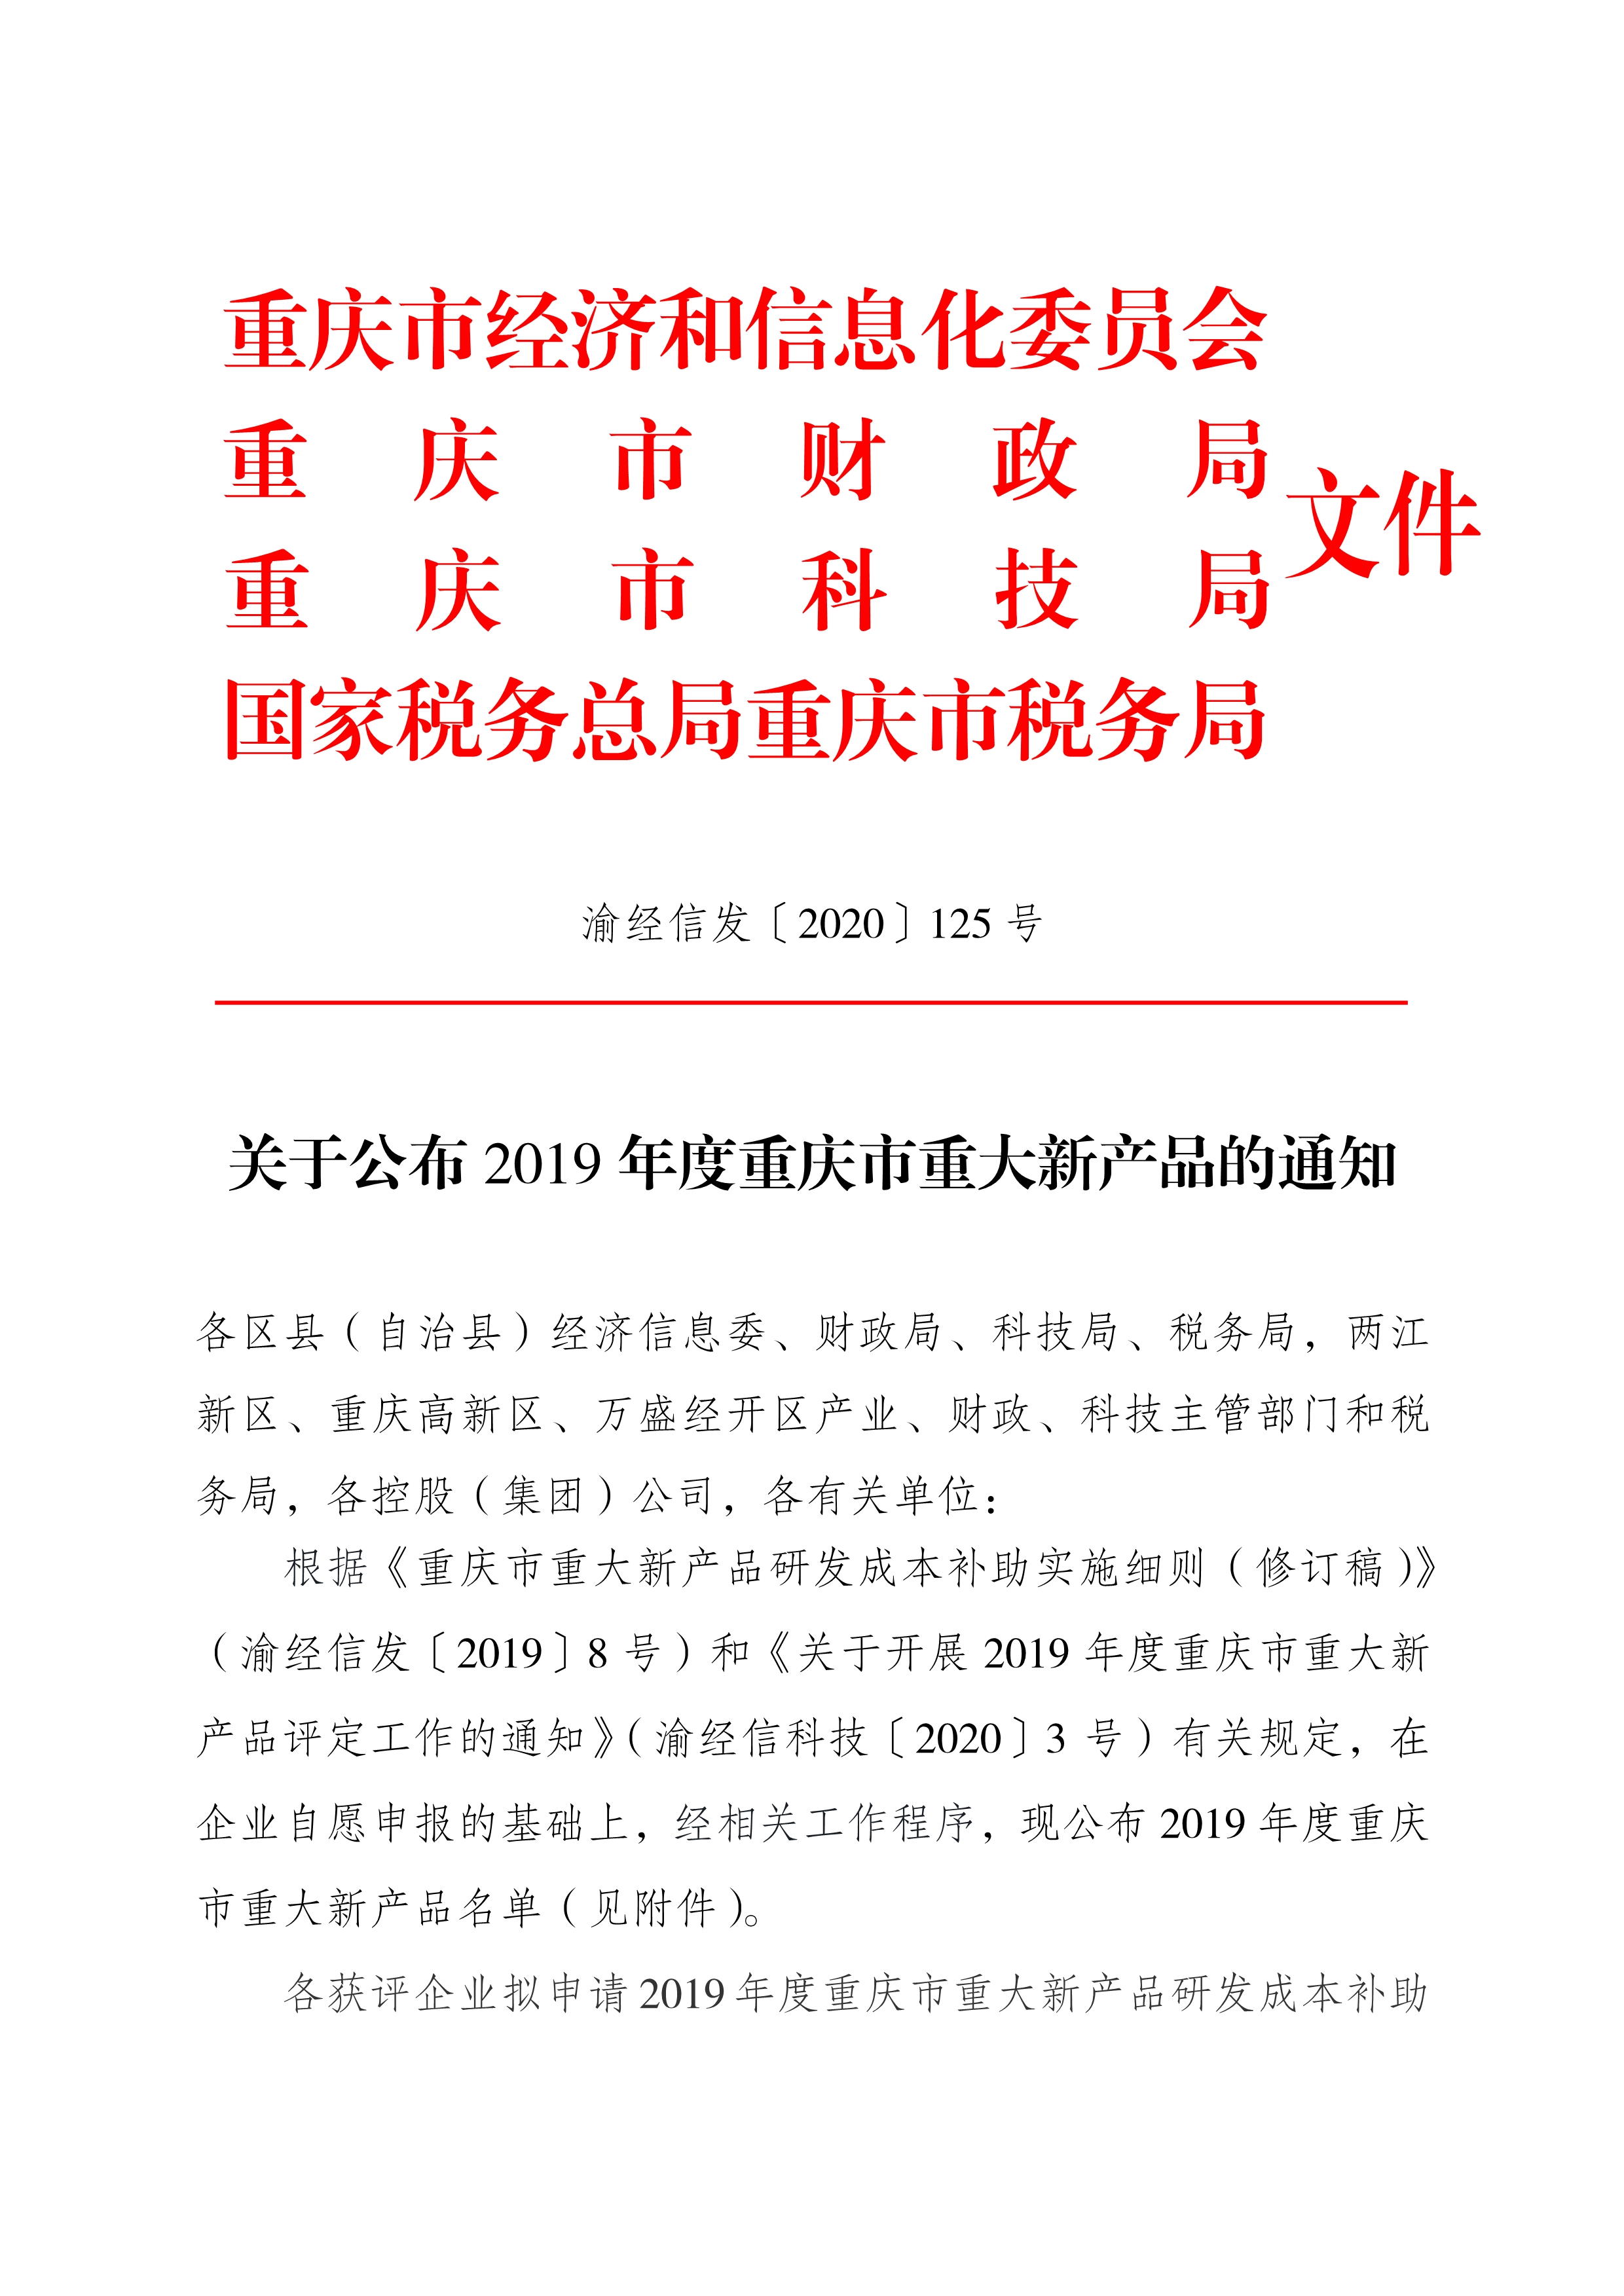 附件4-1关于公布2019年度重庆市重大新产品的通知（渝经信发〔2020〕125号）_1.jpg